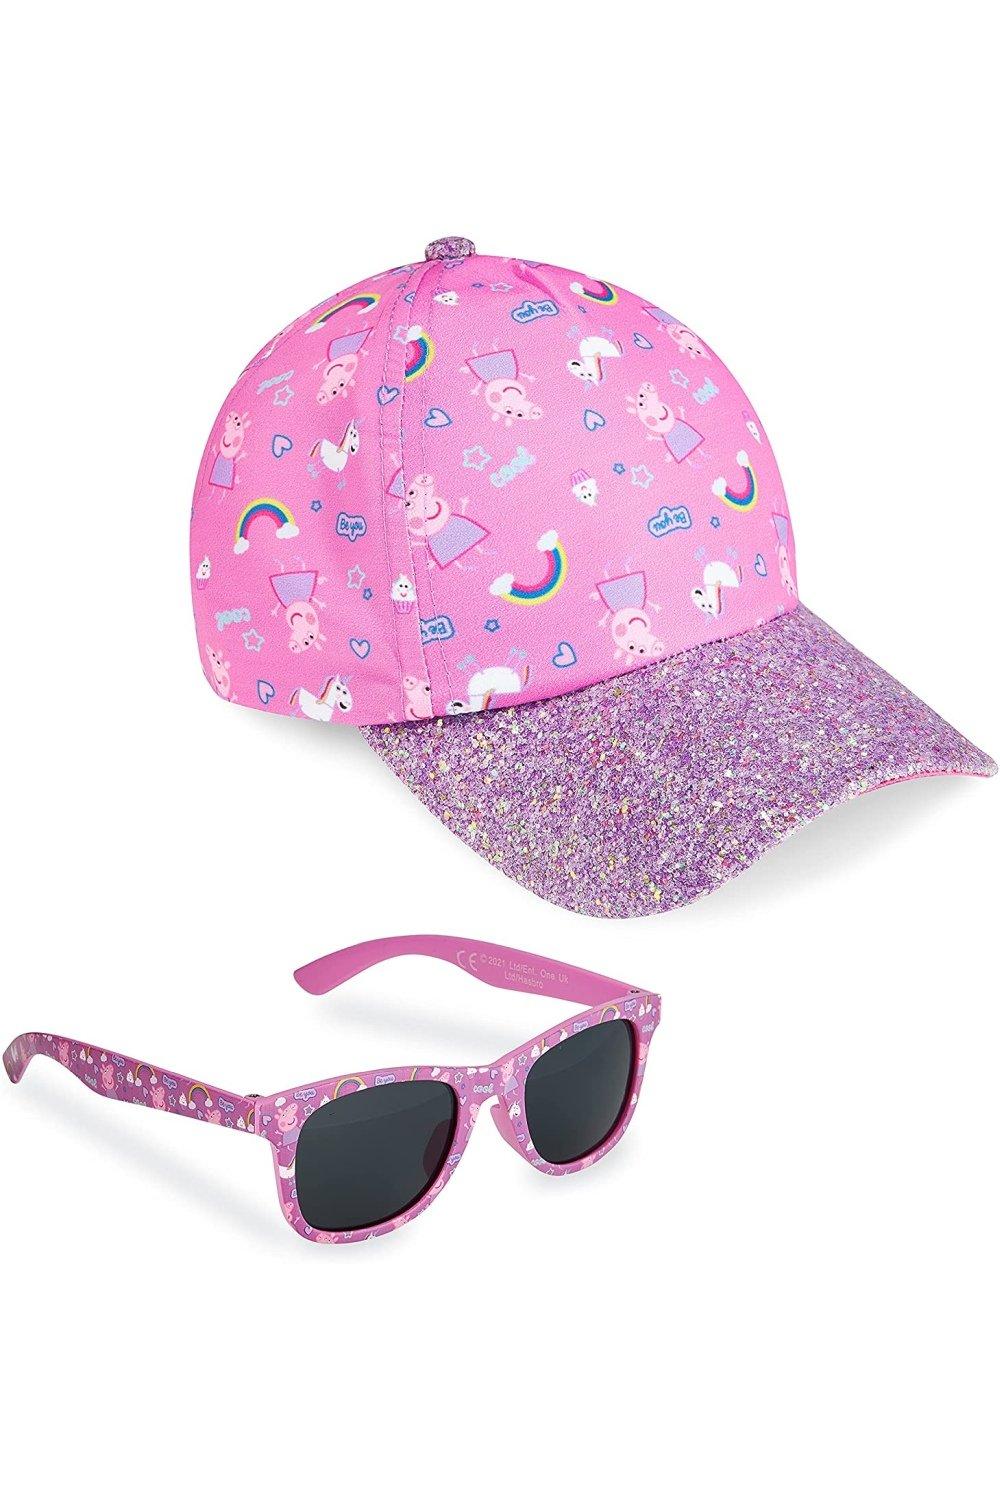 Кепка и солнцезащитные очки Peppa Pig, розовый игровые наборы свинка пеппа peppa pig игровой набор свинка пеппа в аквариуме